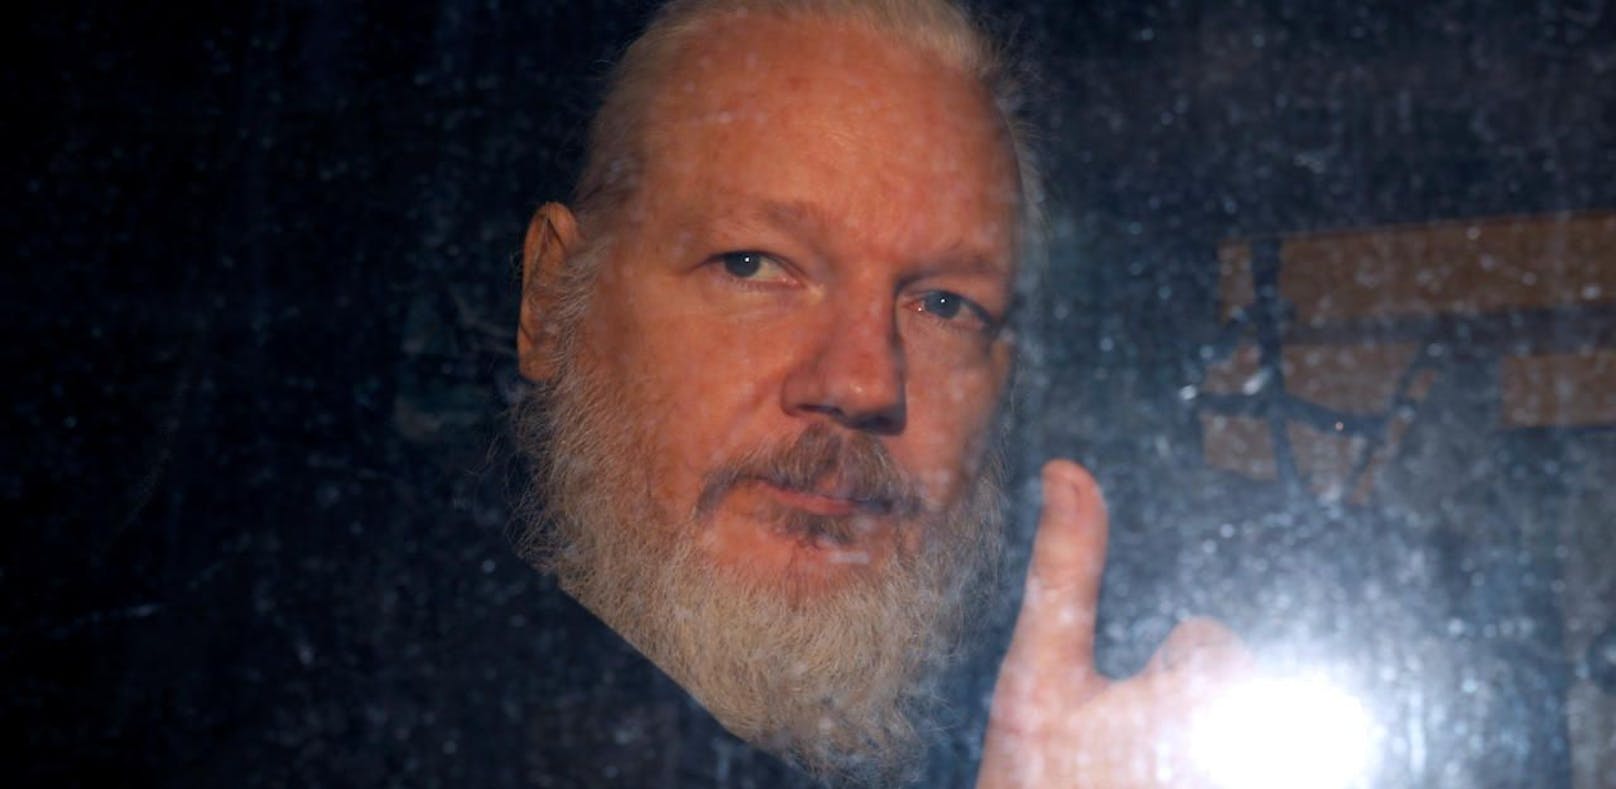 US-Justiz verschärft Anklage gegen Assange